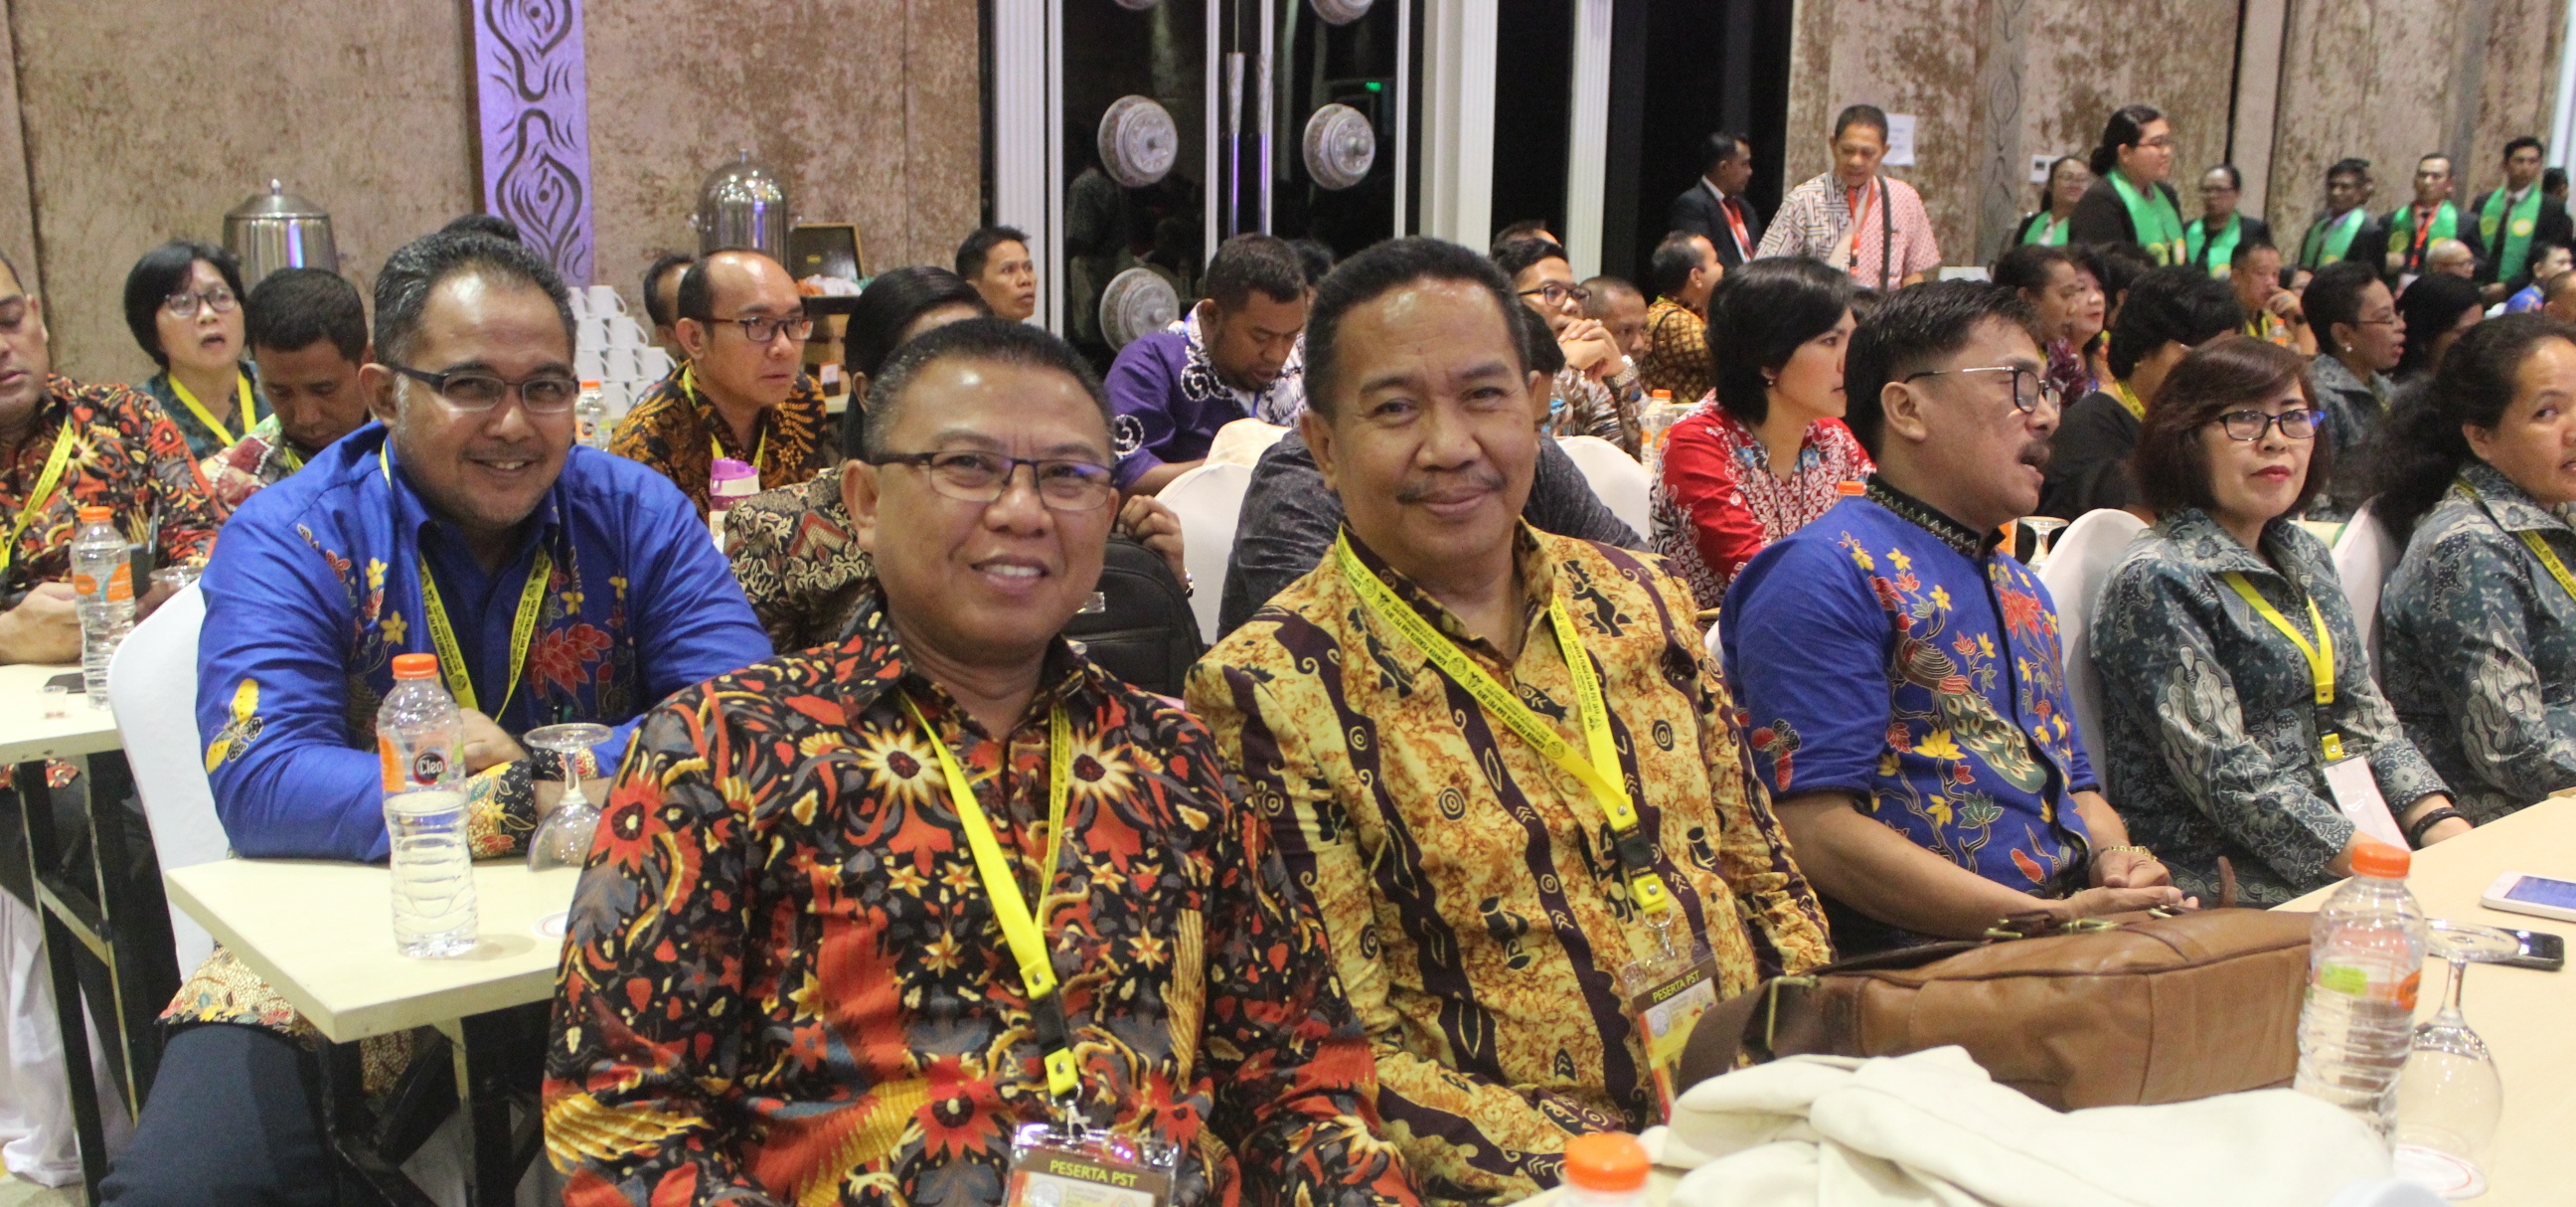 Suasana Persidangan Sinode Tahunan di Bali. Majelis Siniode terus membina karakter dan kompetensi pendeta harus dipersiapkan dengan sebaik mungkin untuk mengantisipasi pesatnya perkembangan ilmu pengetahuan dan teknologi ke depan.